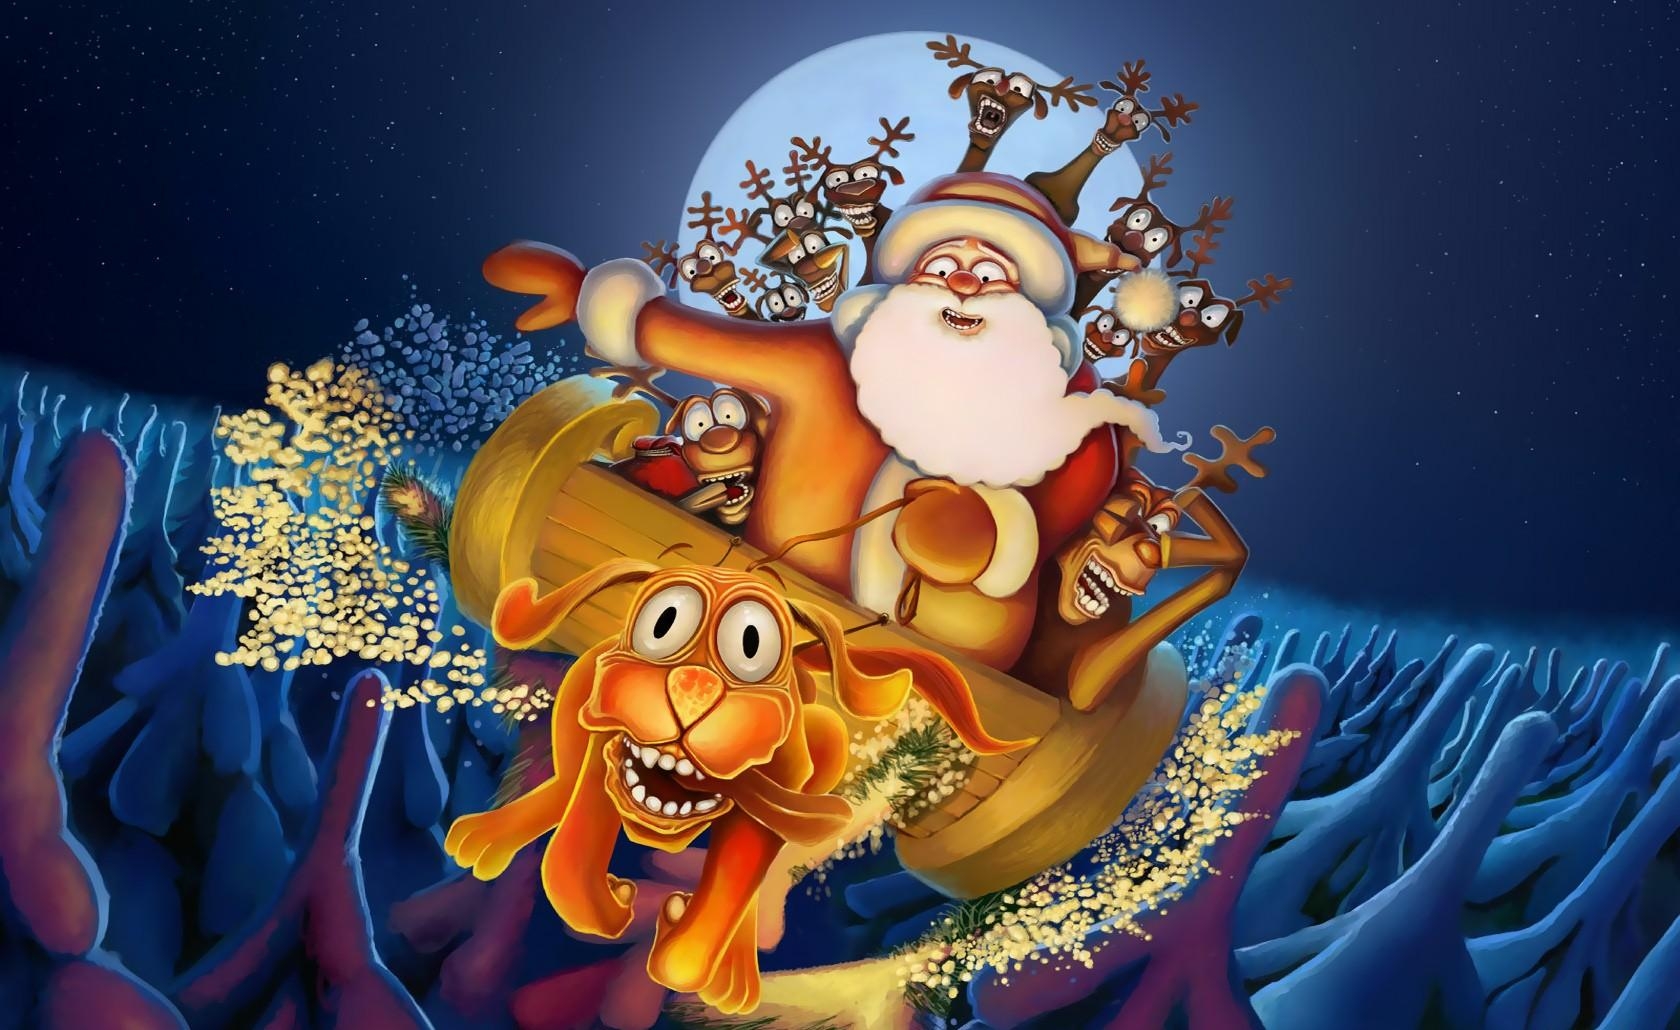 Популярные заставки и фоны Санта Клаус на компьютер